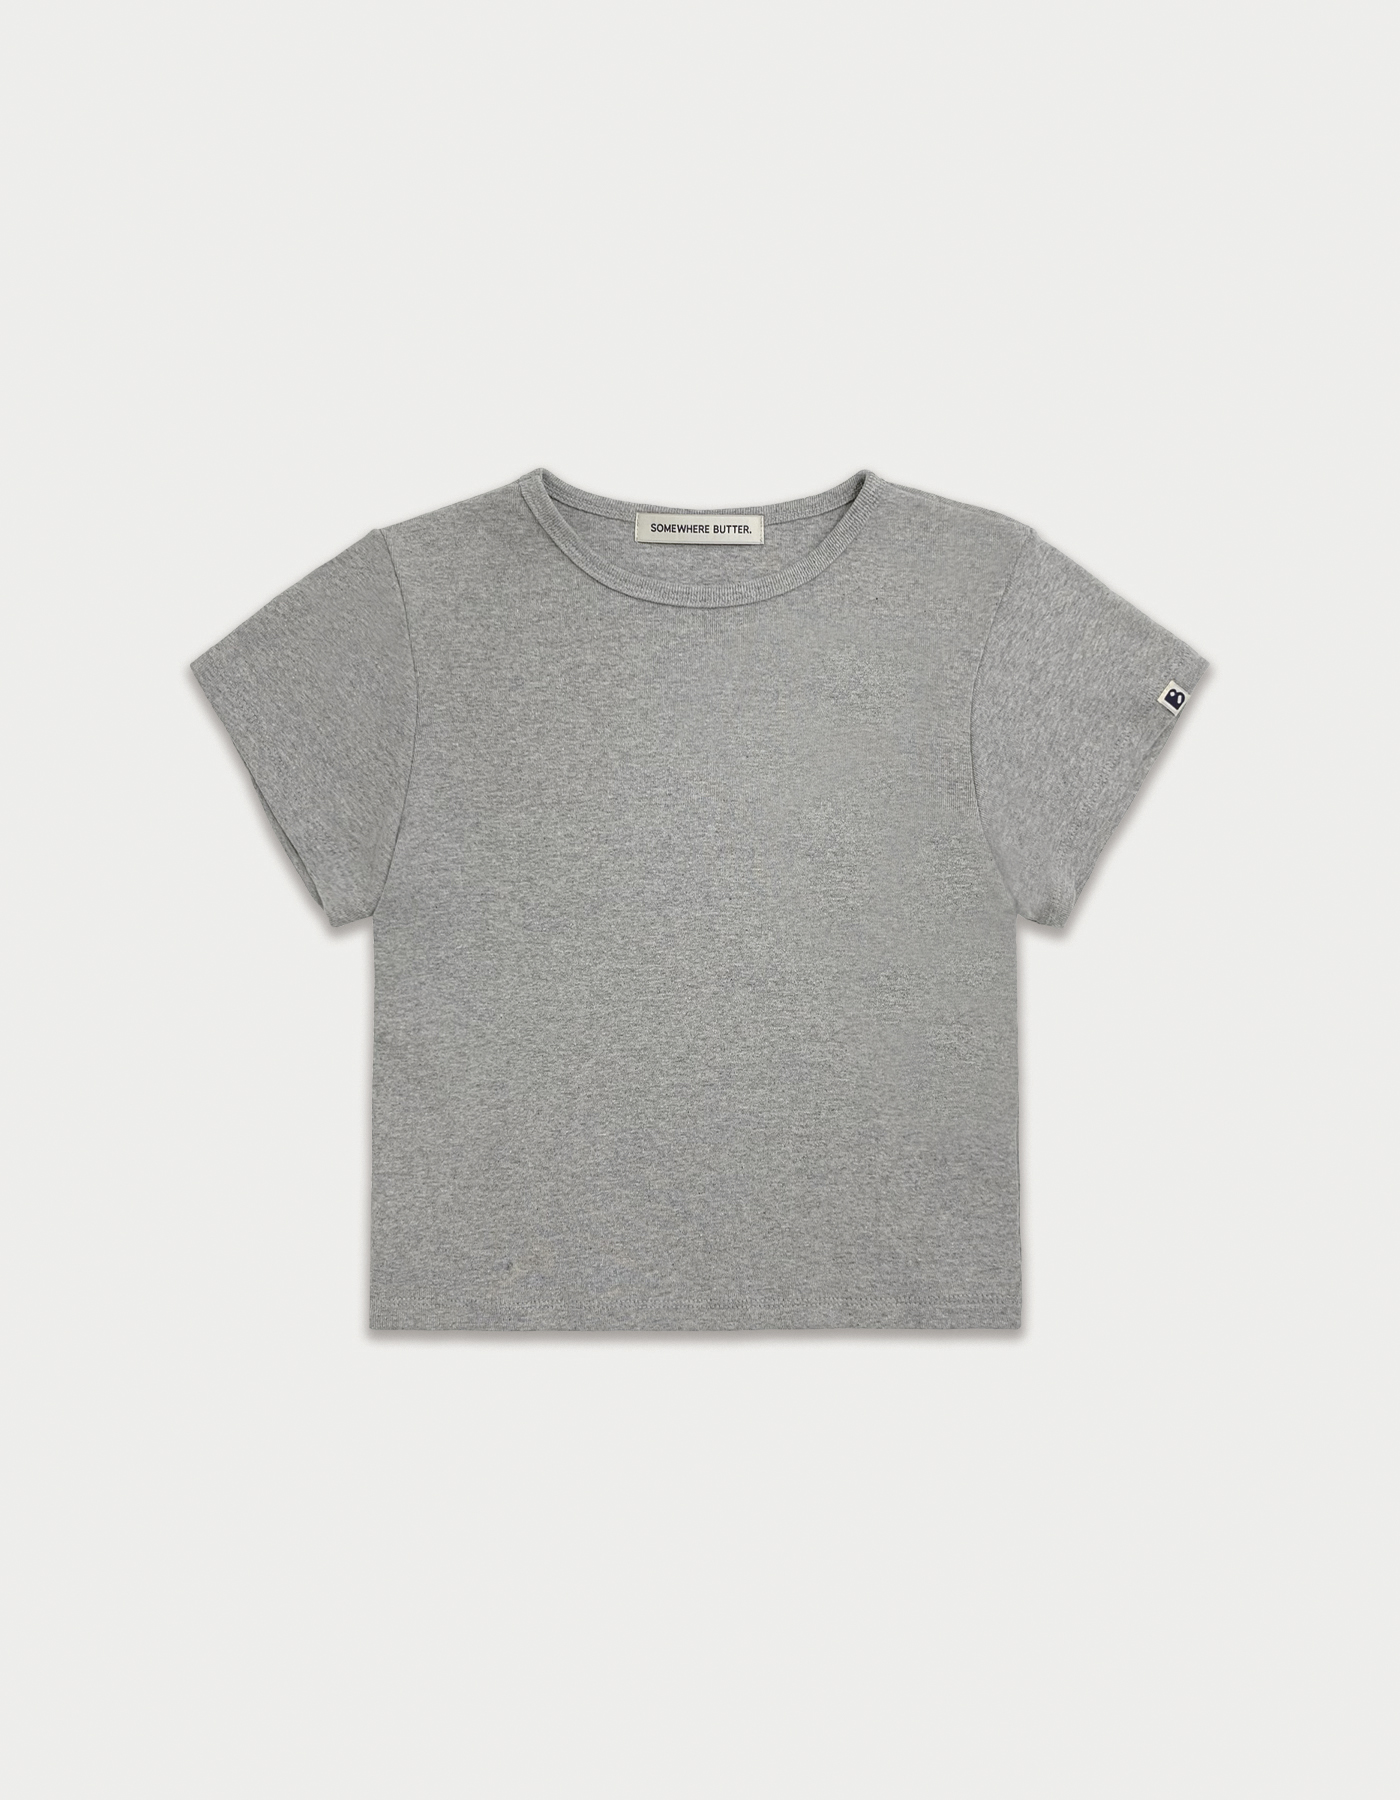 [3rd Order 6.4 출고] Essential clean top - grey